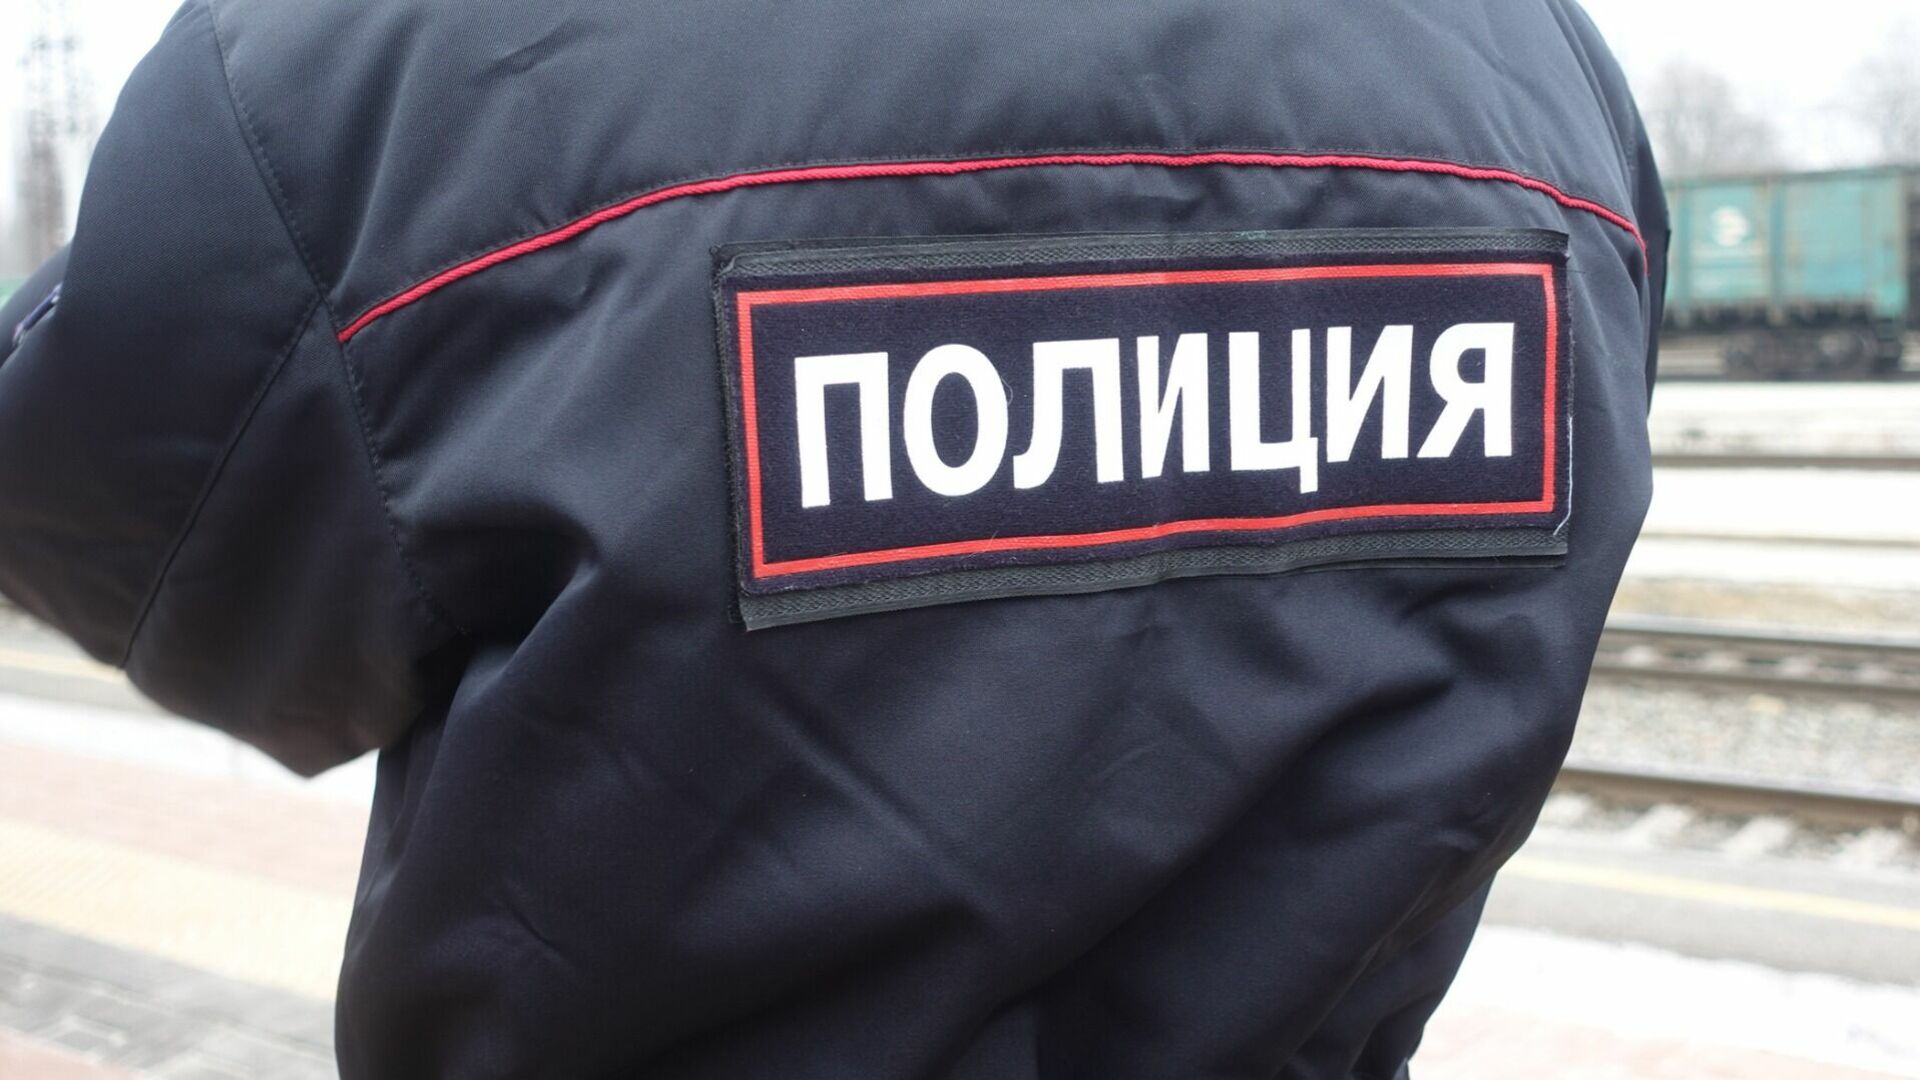 В Первоуральске экс-депутата оштрафовали за разлитое ведро с фекалиями